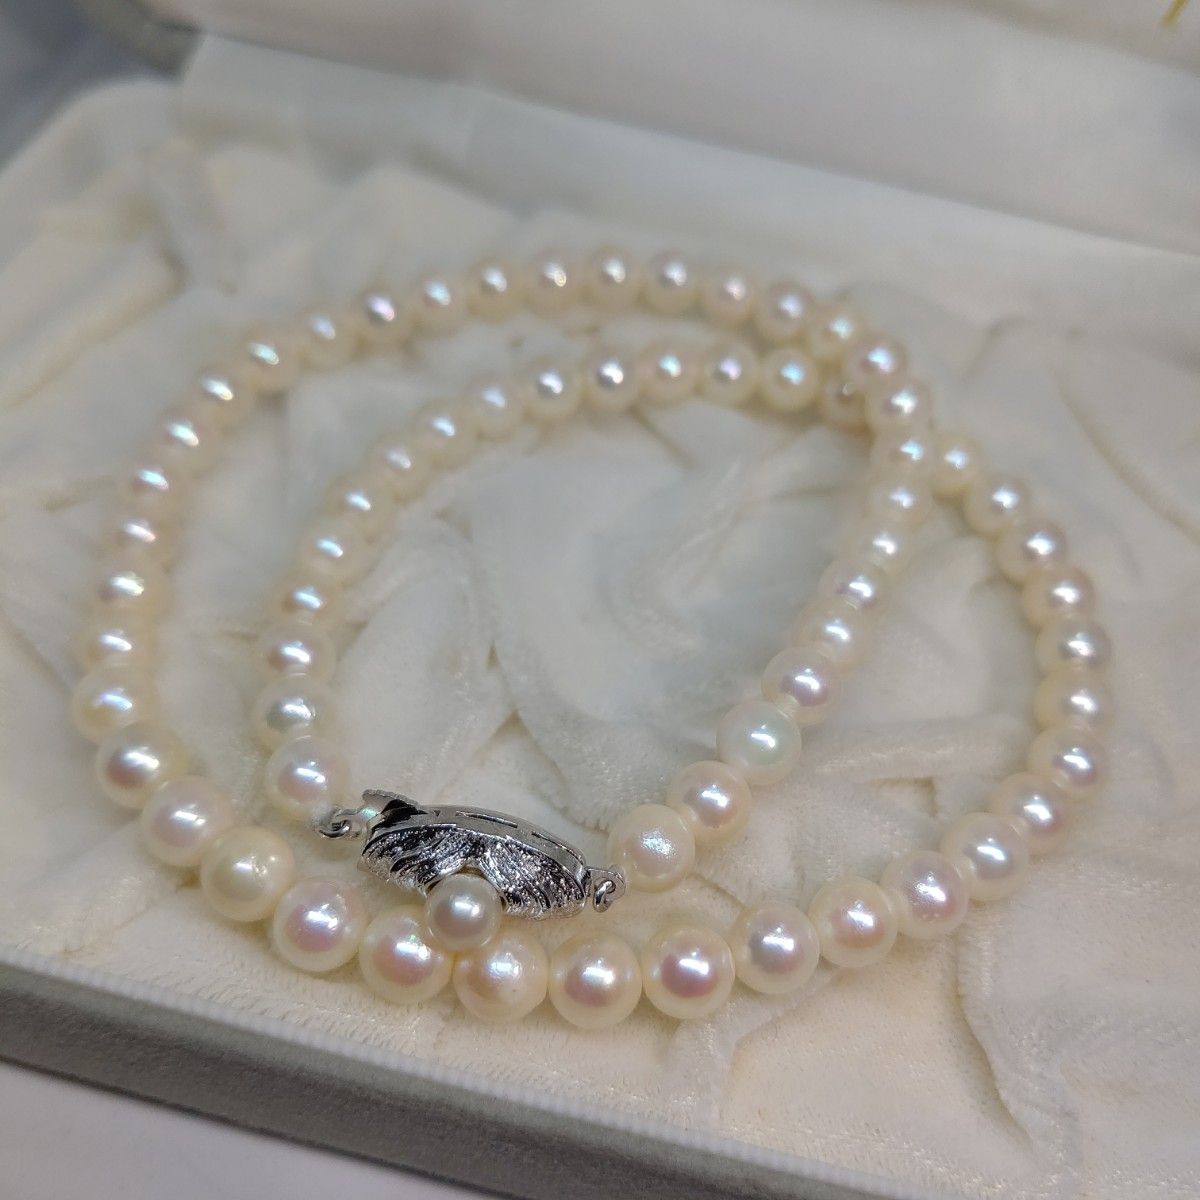 あこや 真珠 ネックレス イヤリング セット干渉色 silver 刻印  パールネックレス  本真珠